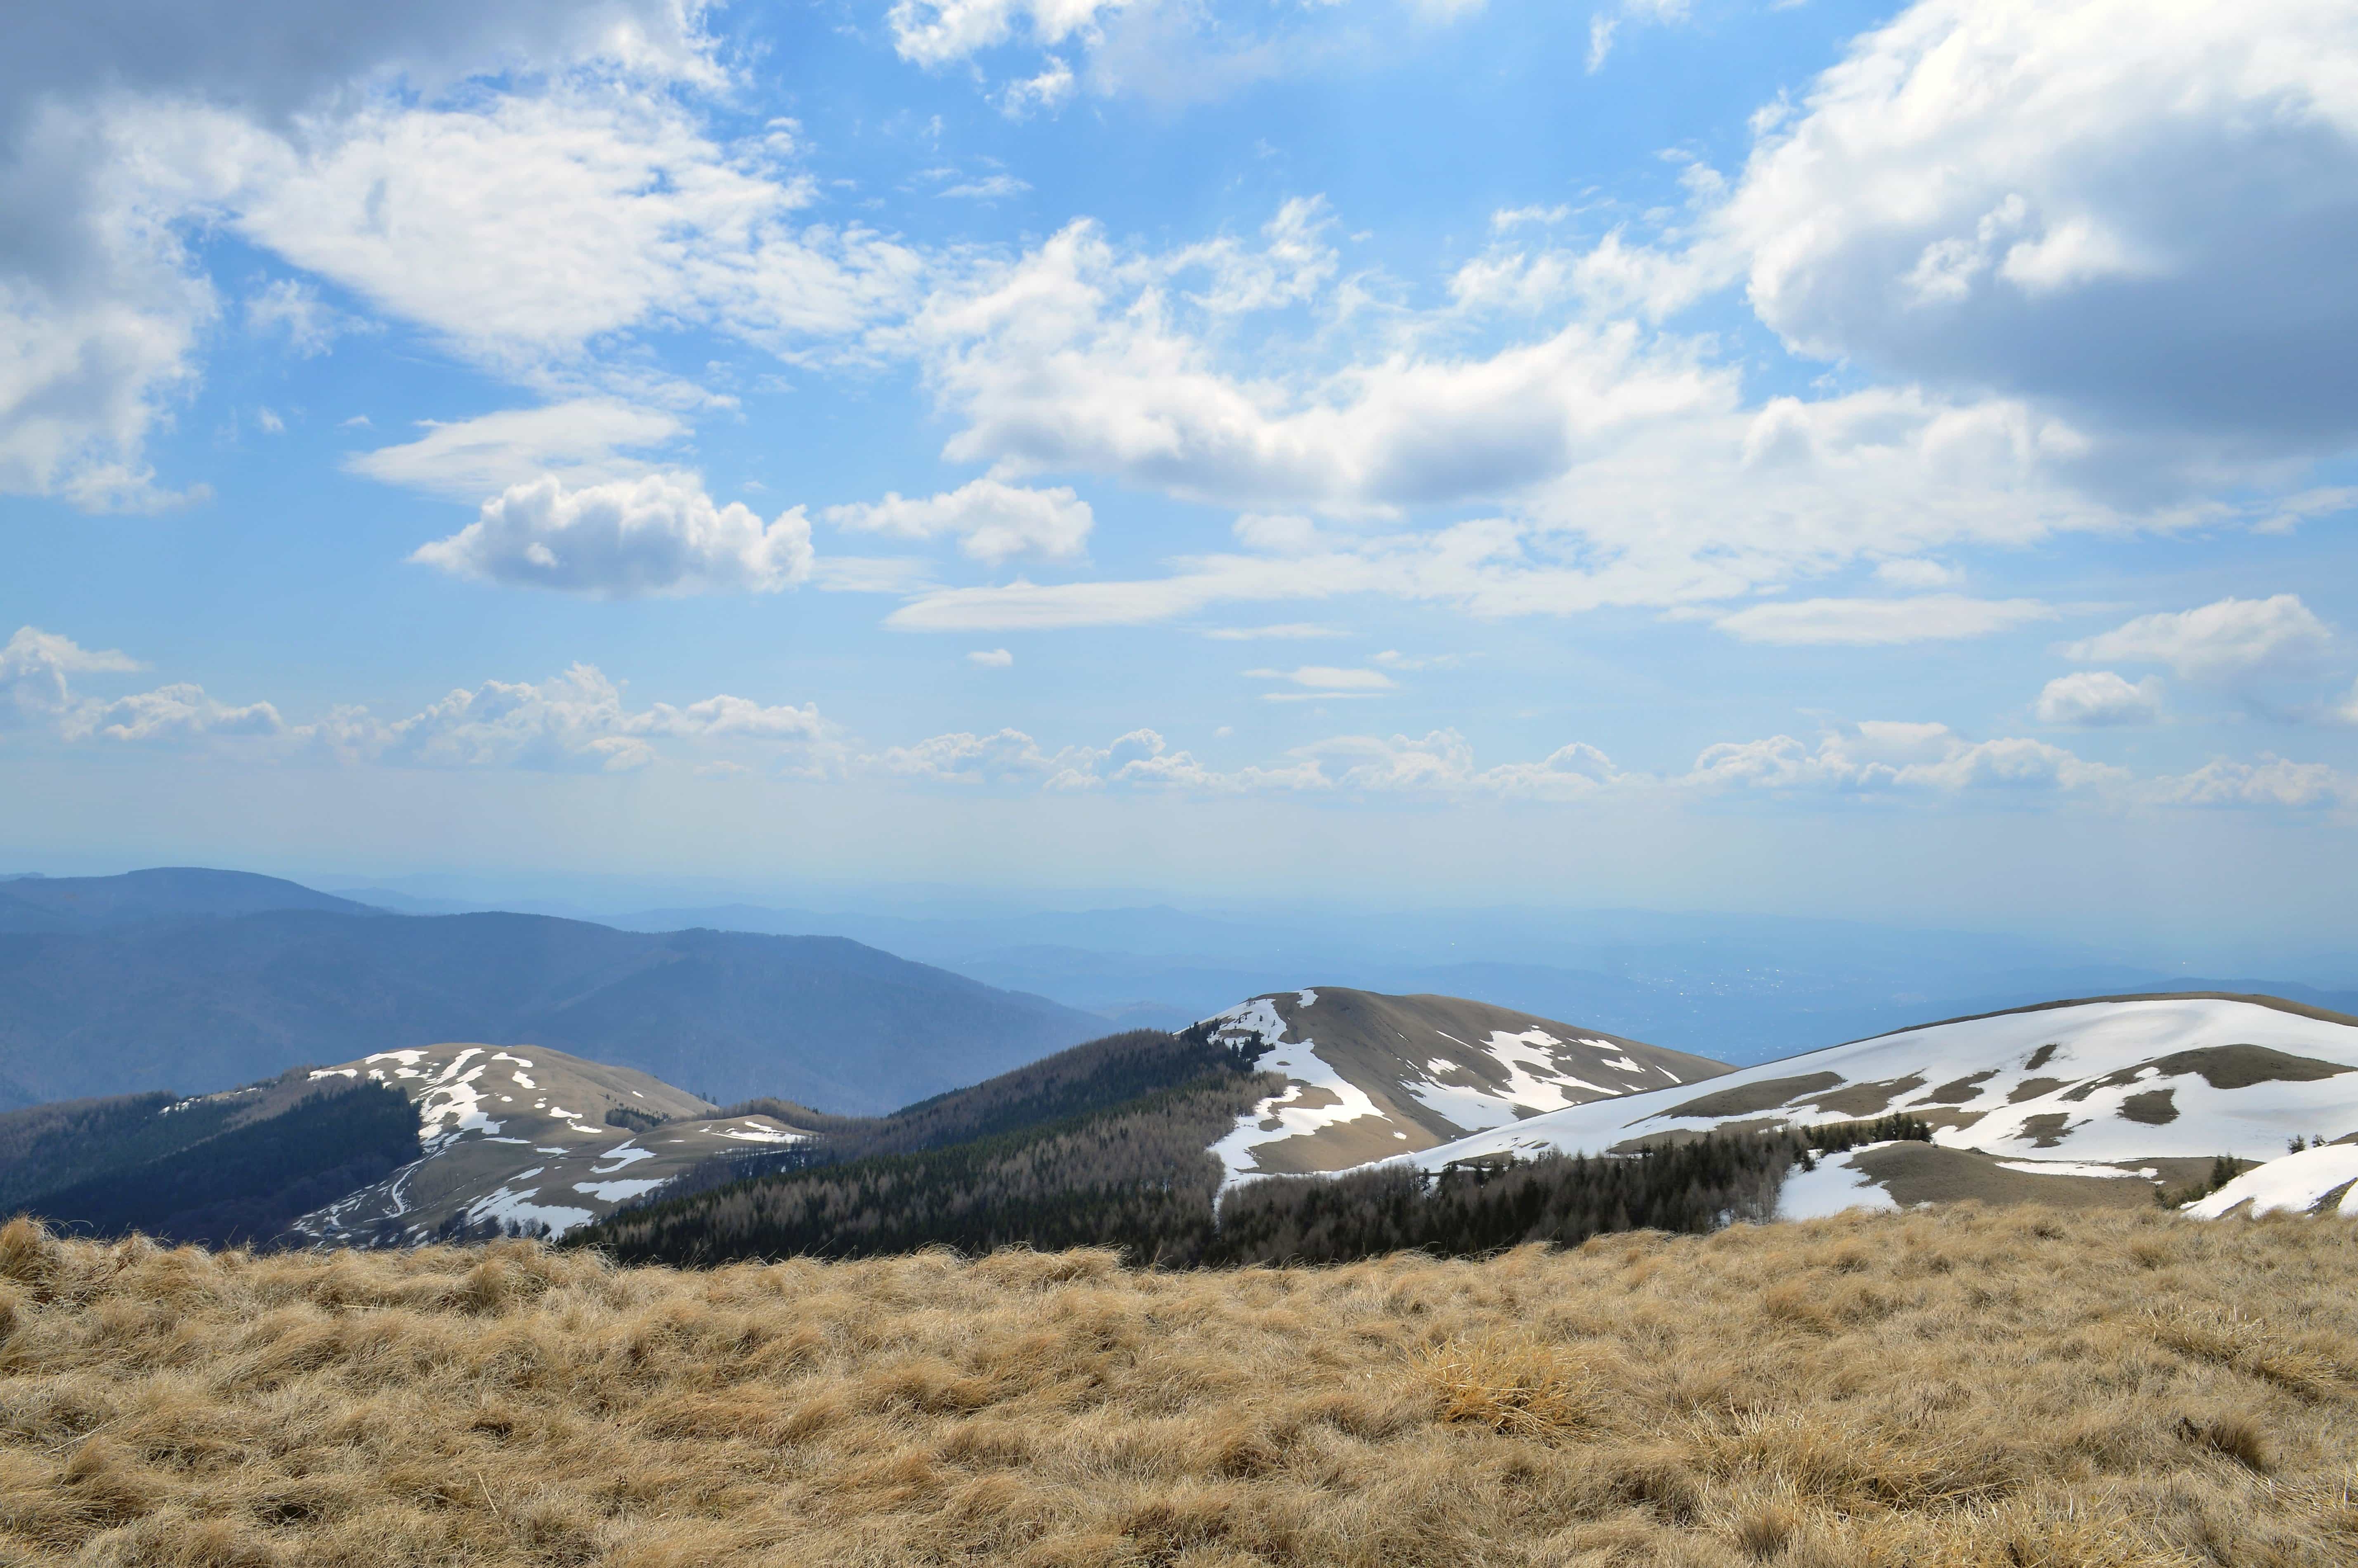 Hình ảnh miễn phí: núi, phong cảnh, bầu trời xanh, tuyết, đồng cỏ, thiên  nhiên, địa chất, đám mây, đỉnh núi